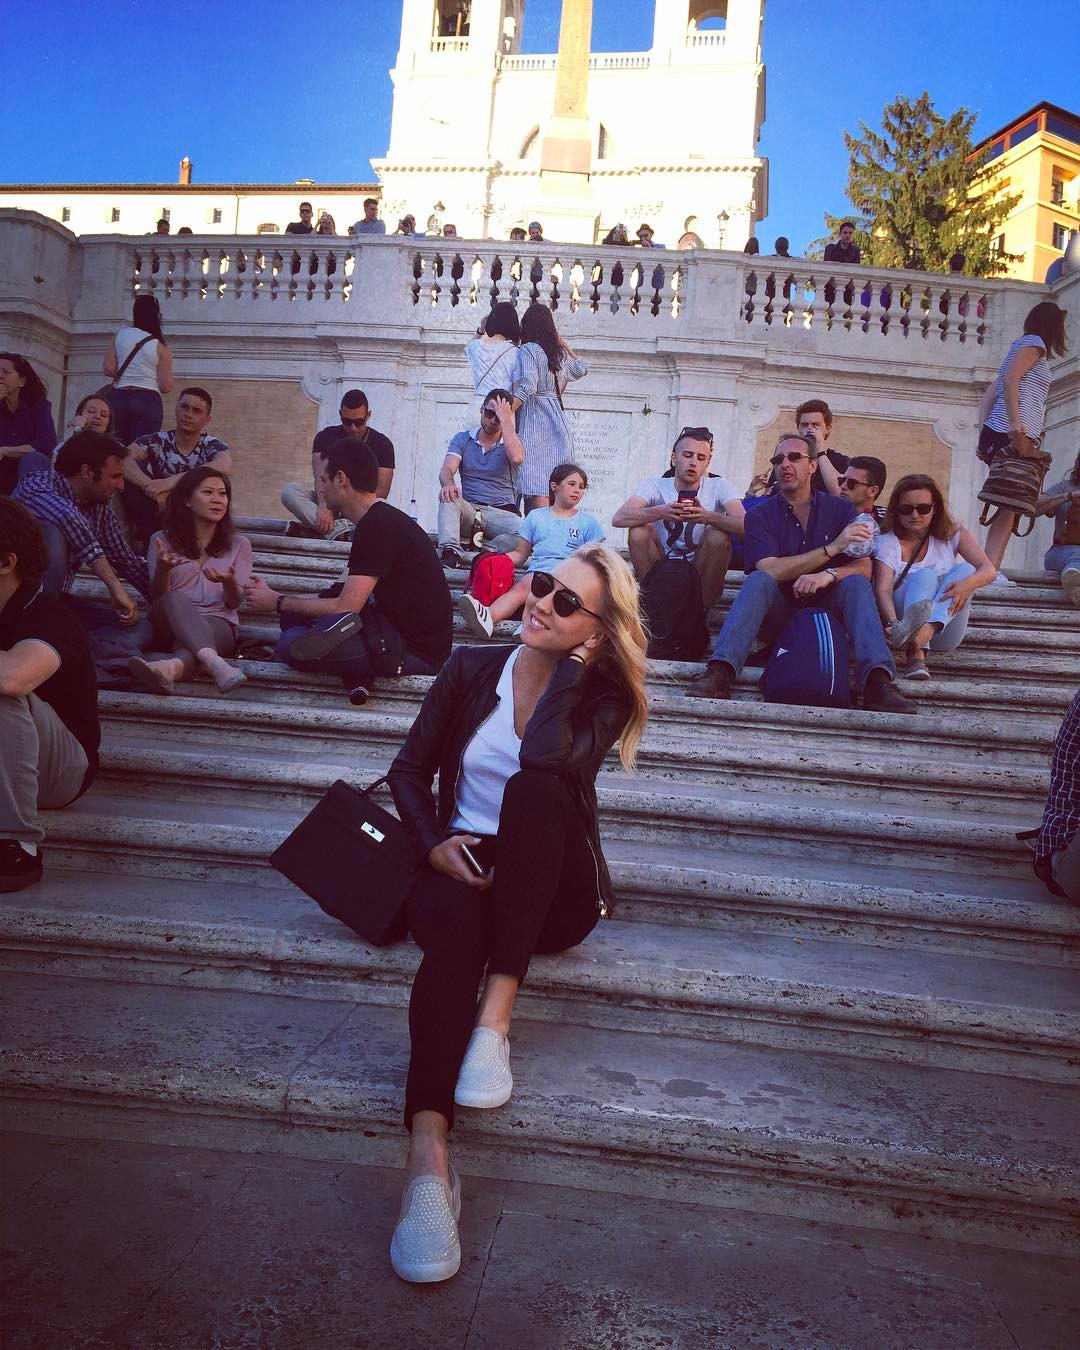 Елена Веснина представила миру свой фотошедевр в соц.сети Инстаграм